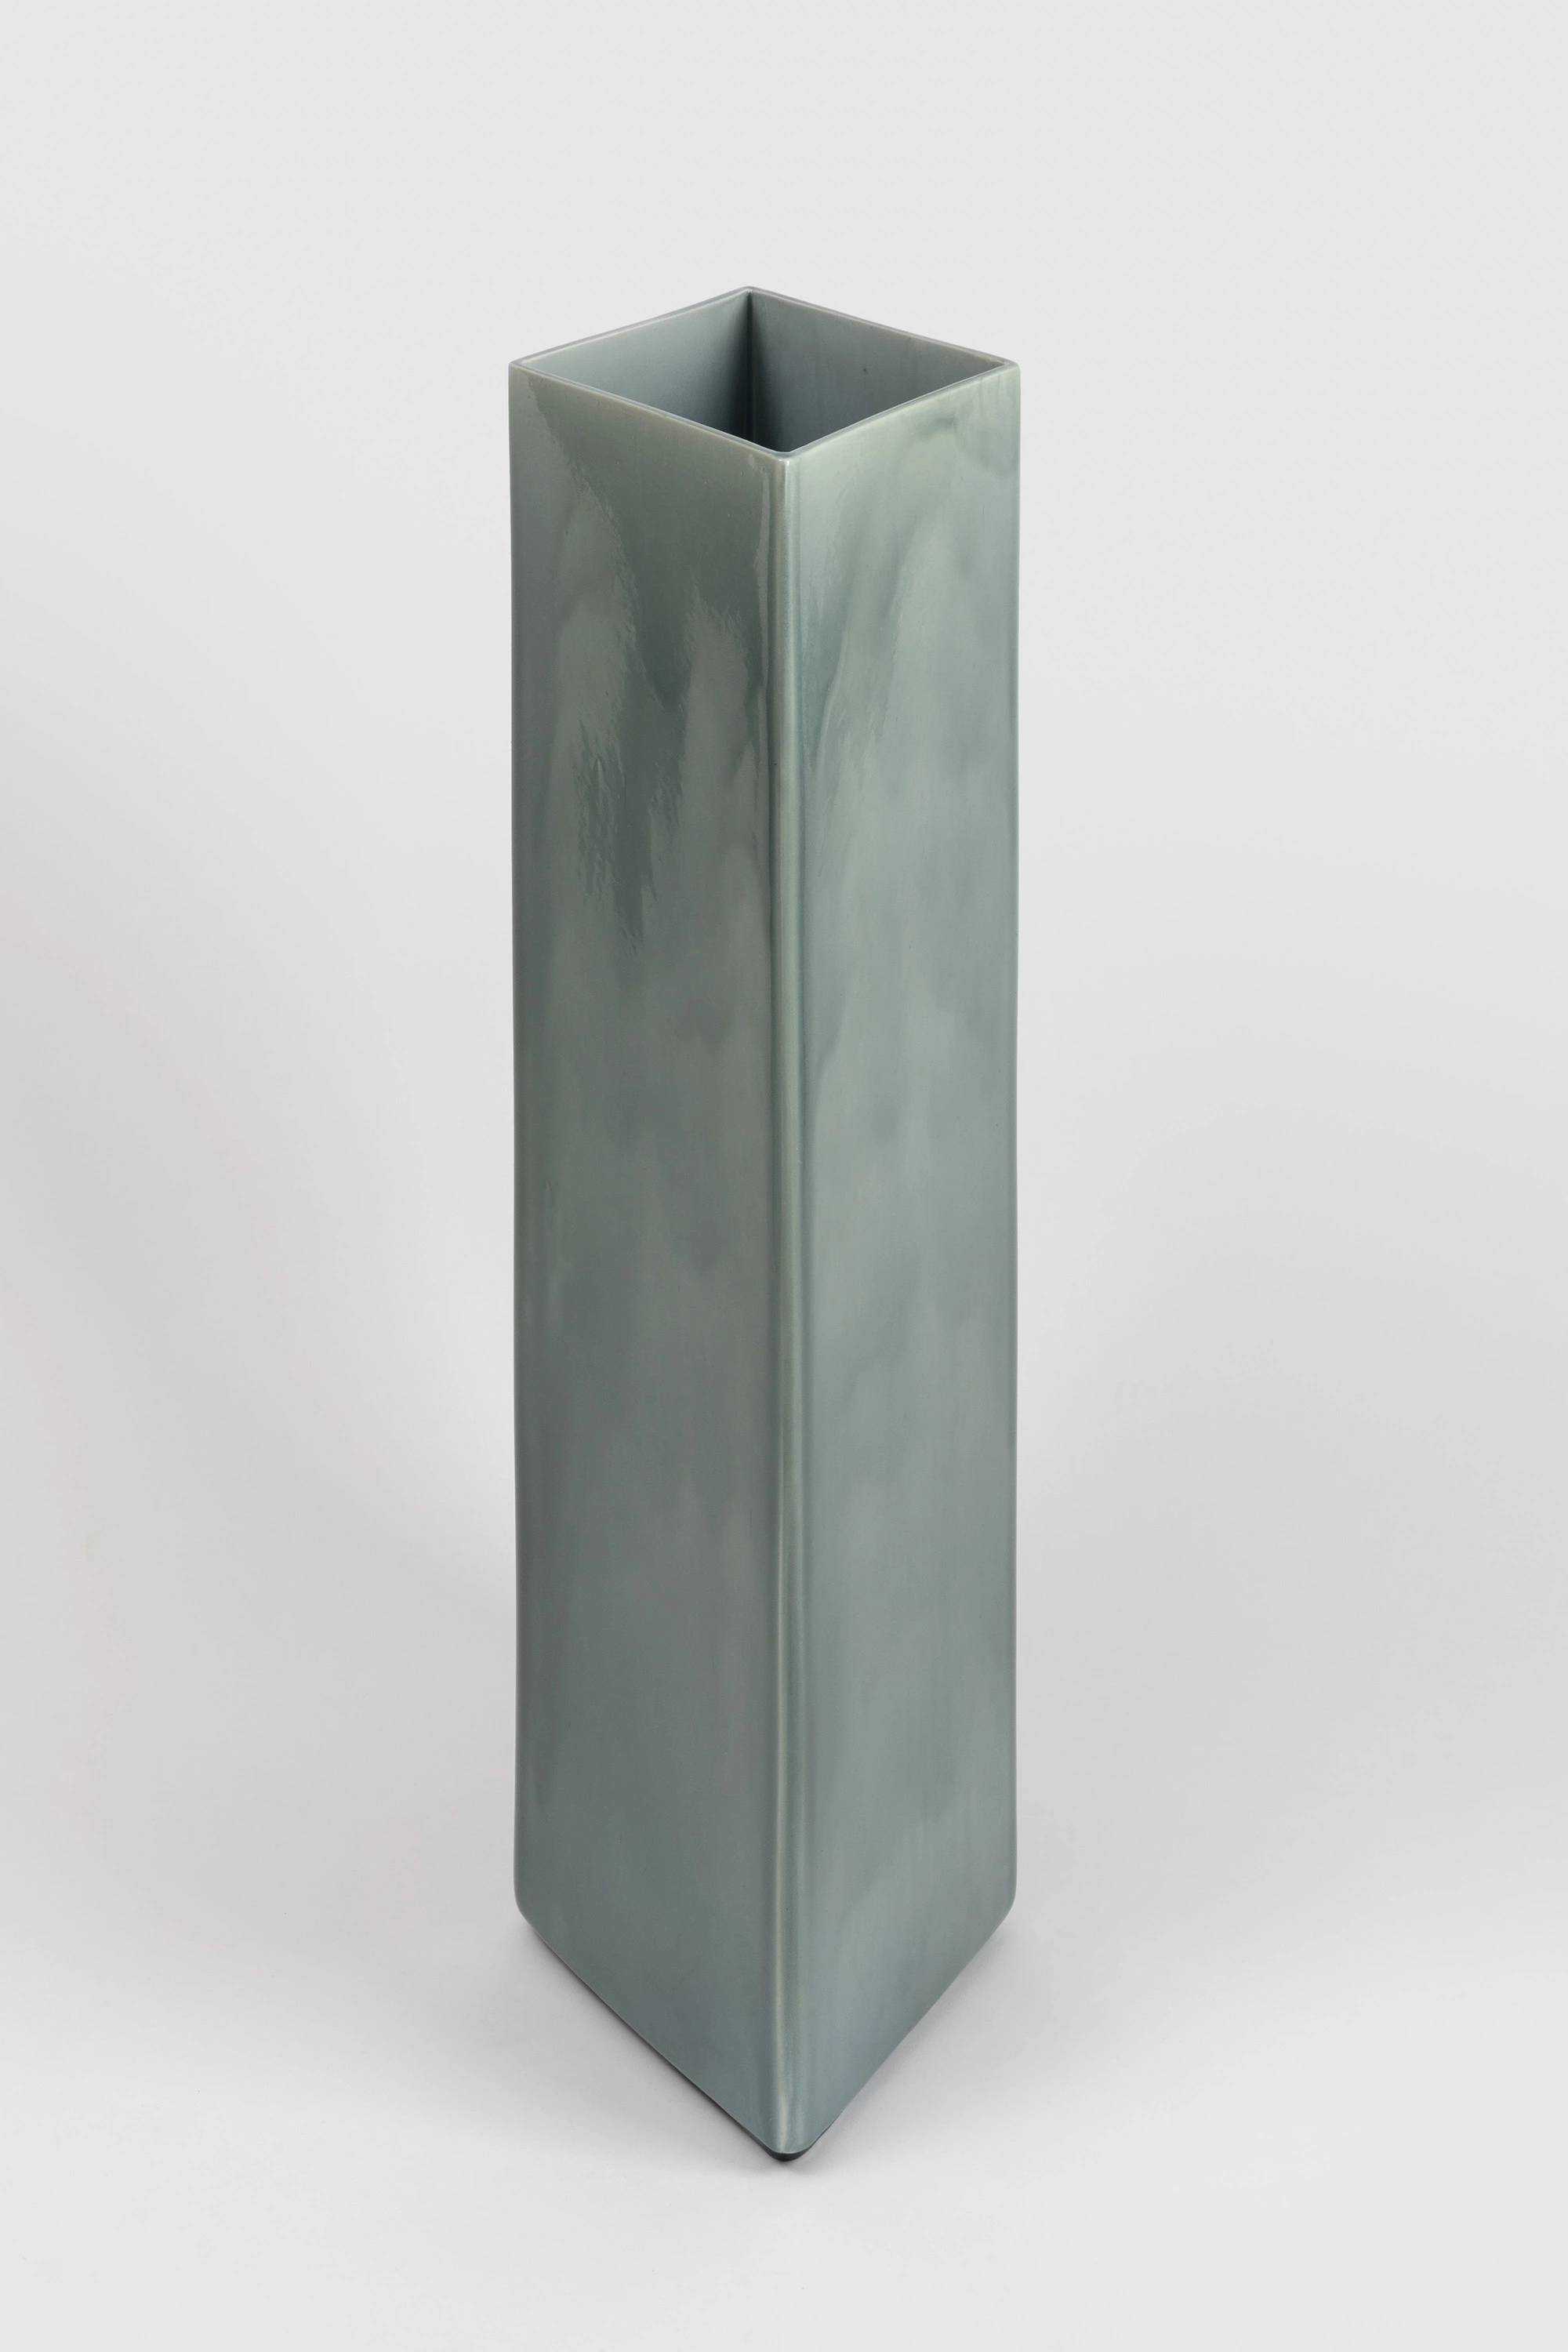 Vase Losange 84 blue - Ronan & Erwan Bouroullec - Vase - Galerie kreo